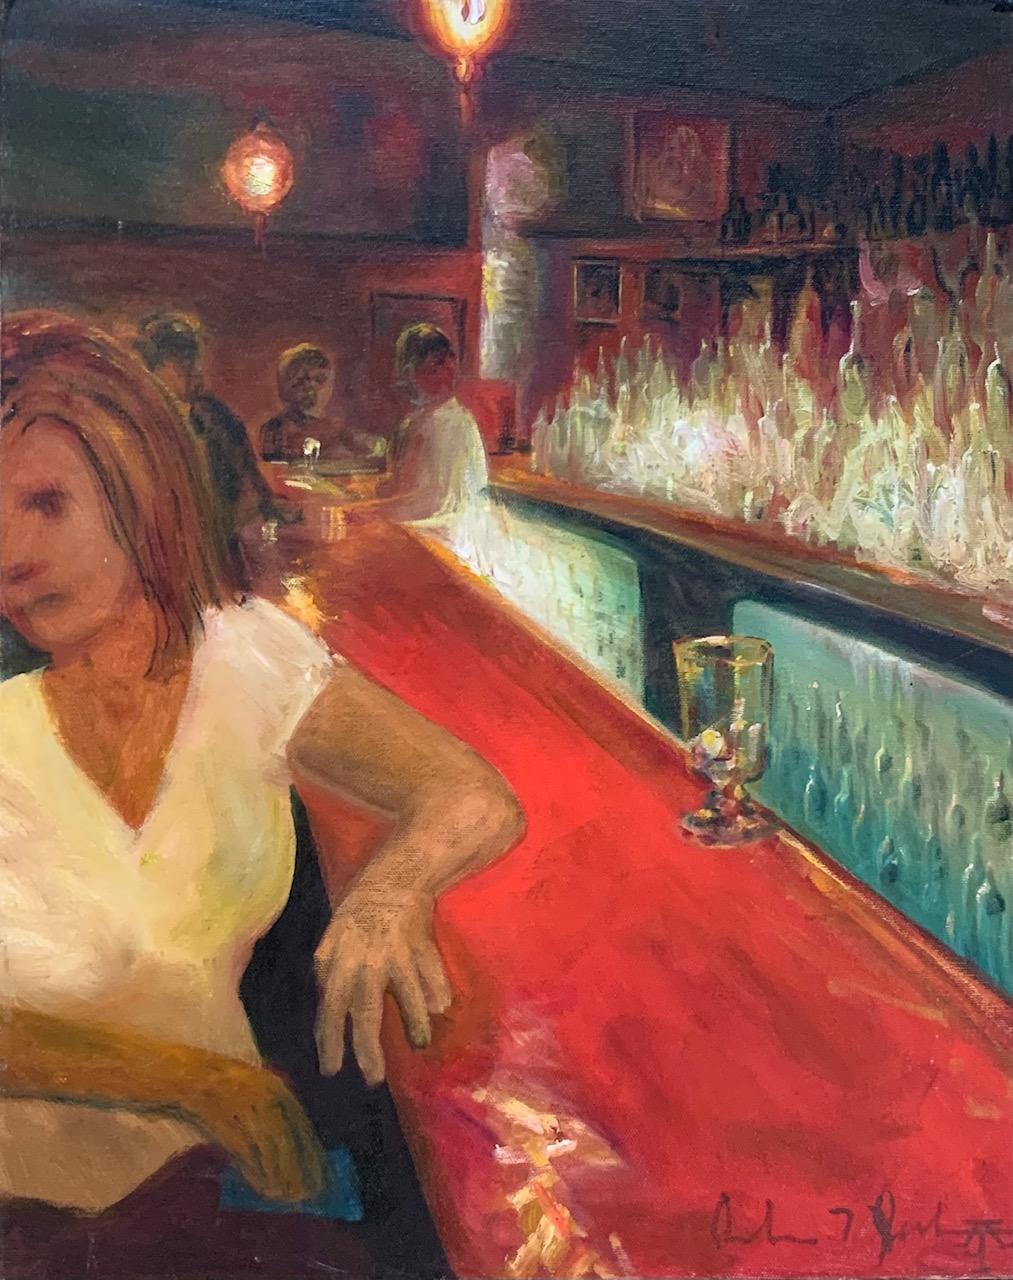 lady in bar", huile sur toile d'Andrew Jackson

Artiste plasticien depuis 1991, Andrew Jackson apporte au studio Outer Edge son expérience de 20 ans de travail avec les galeries, les éditeurs, les collectionneurs et les artistes. Auparavant, Andrew